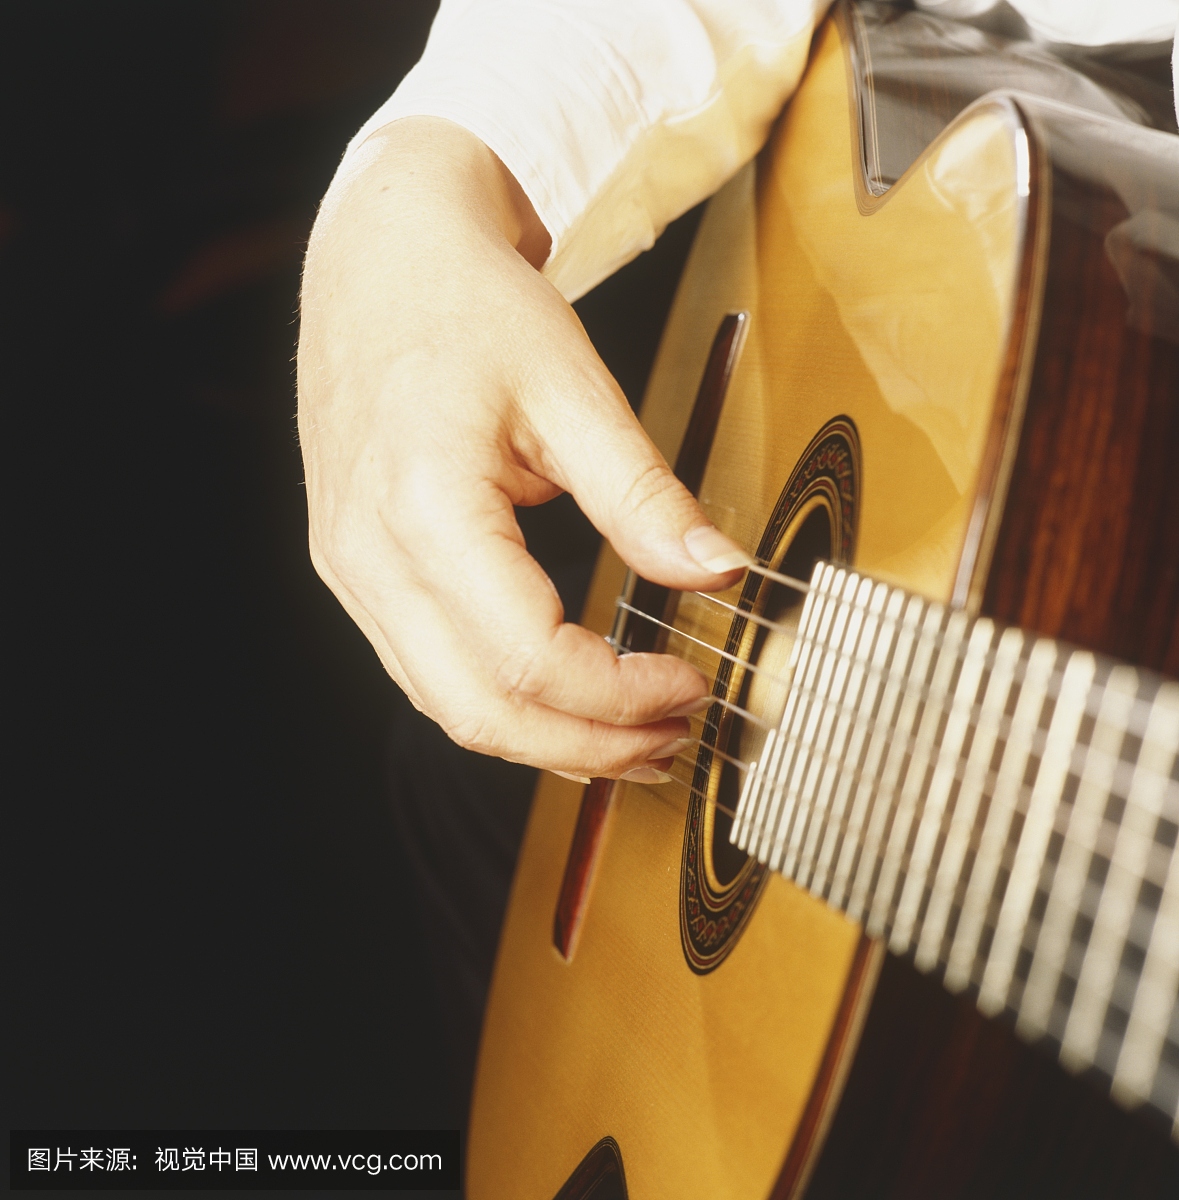 人的右手采摘古典吉他弦,侧视图。